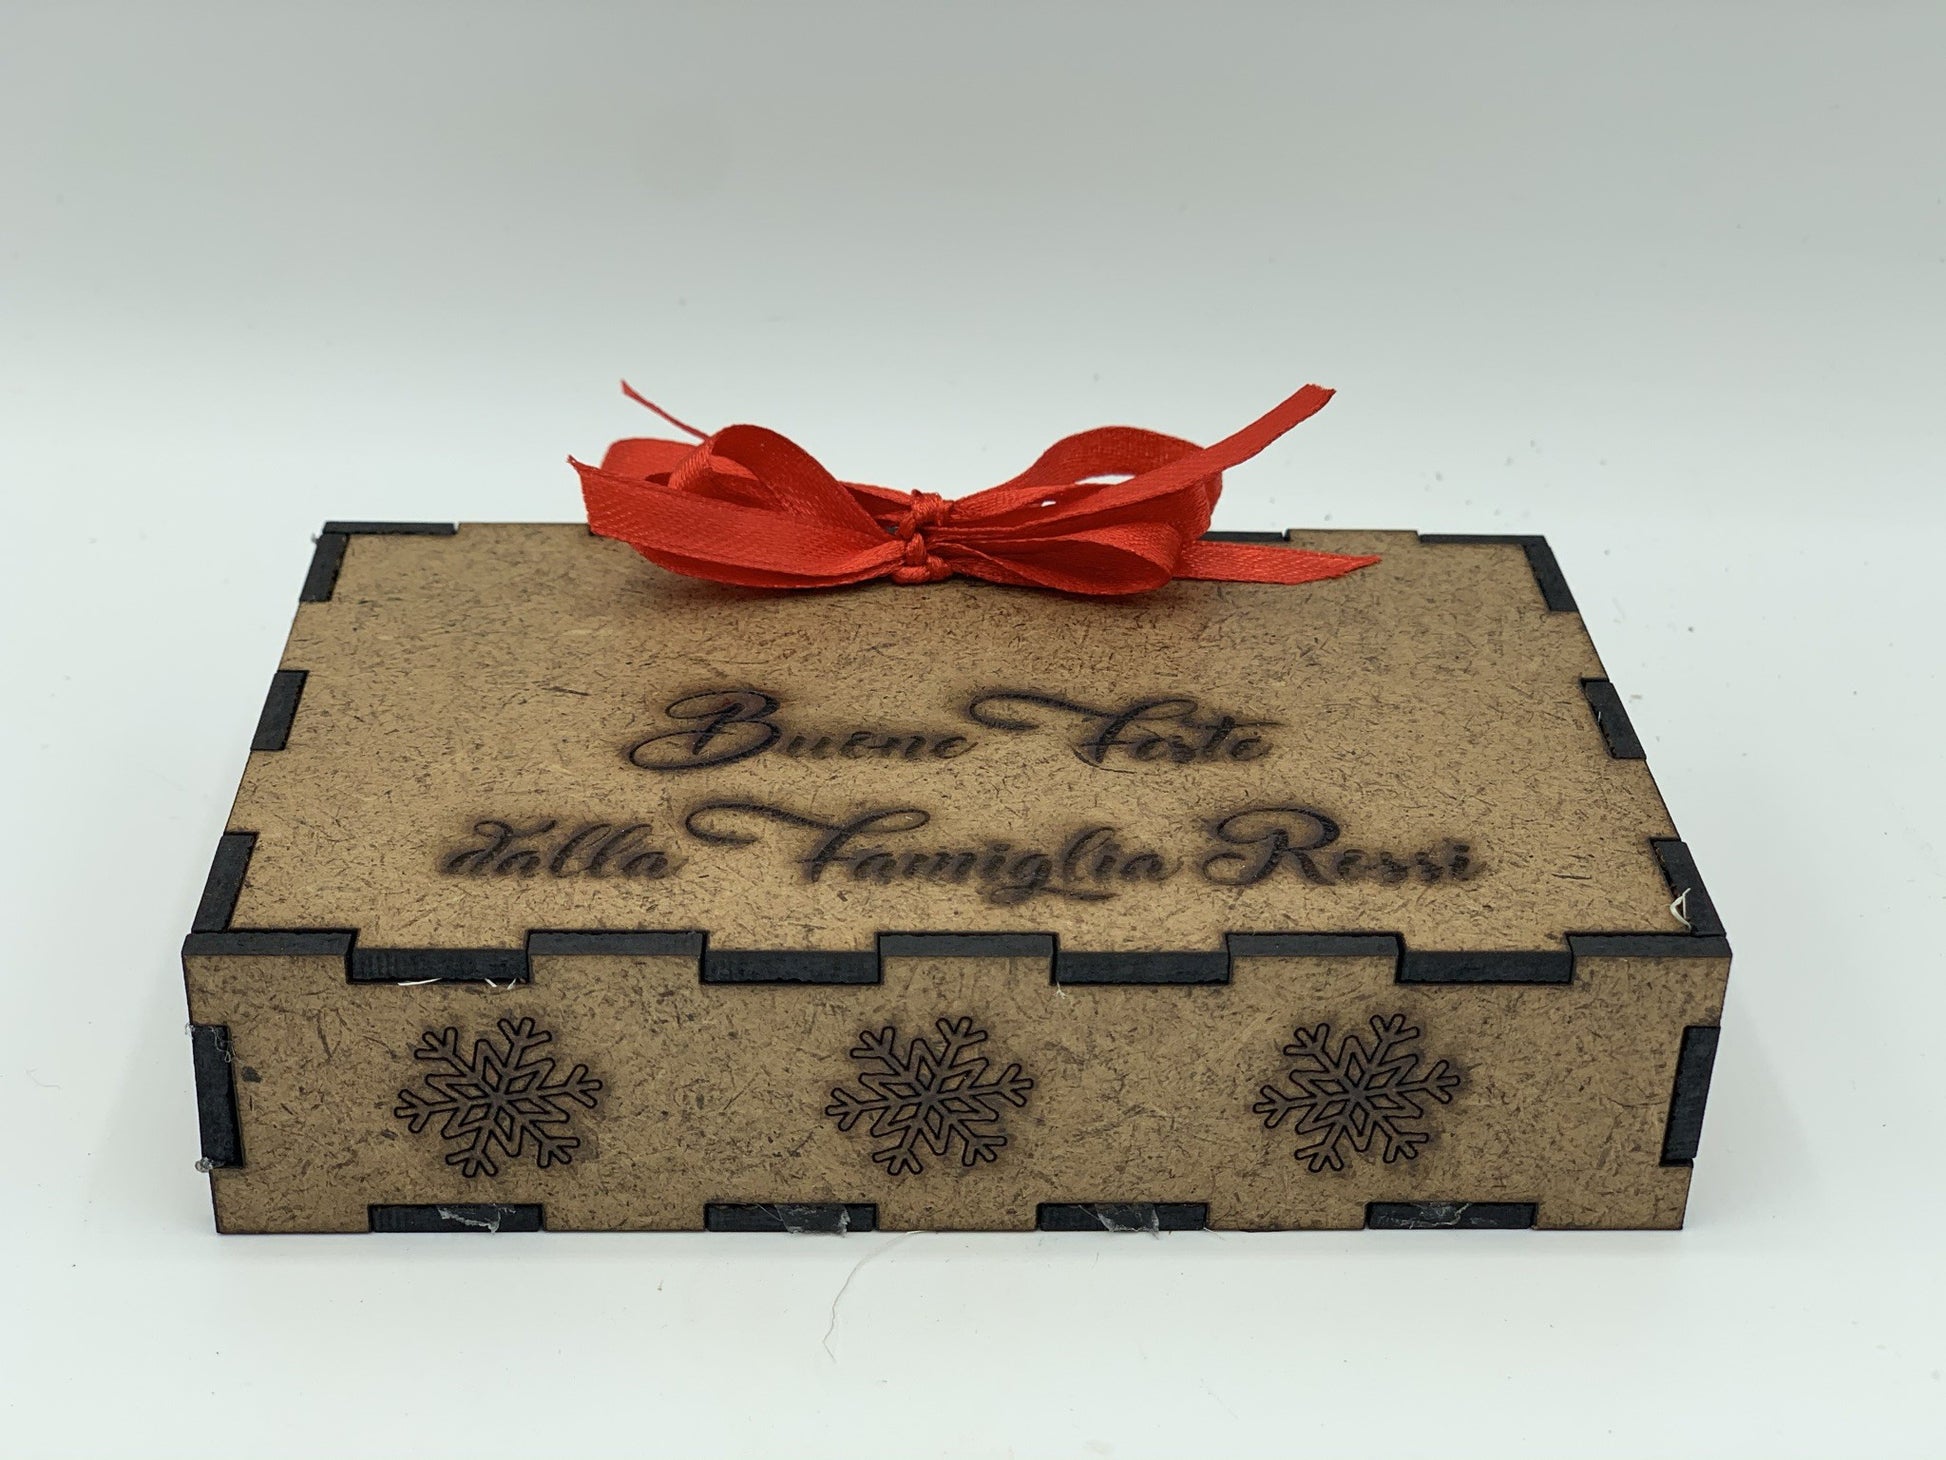 Papillon in legno Batman con scatola regalo personalizzata Idea's Cottage